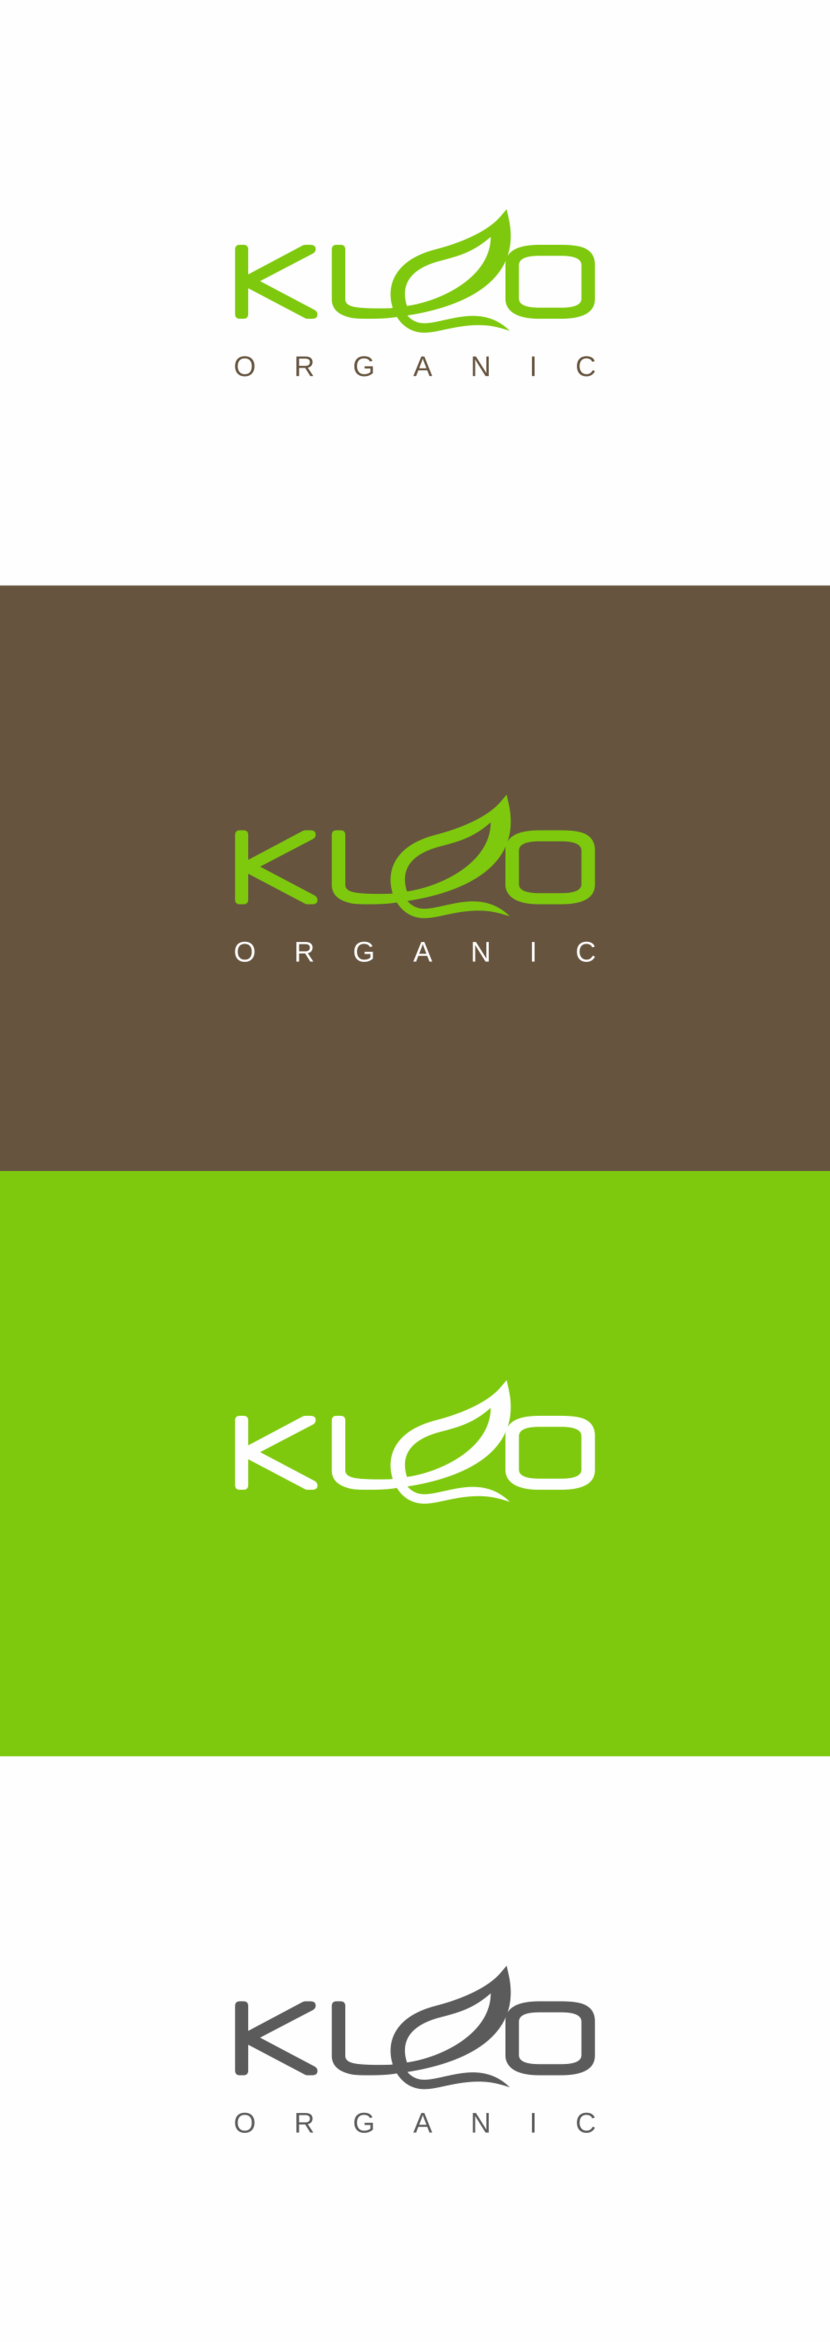 1 - Логотип и фирменный стиль для оптовика органических товаров для семьи и дома